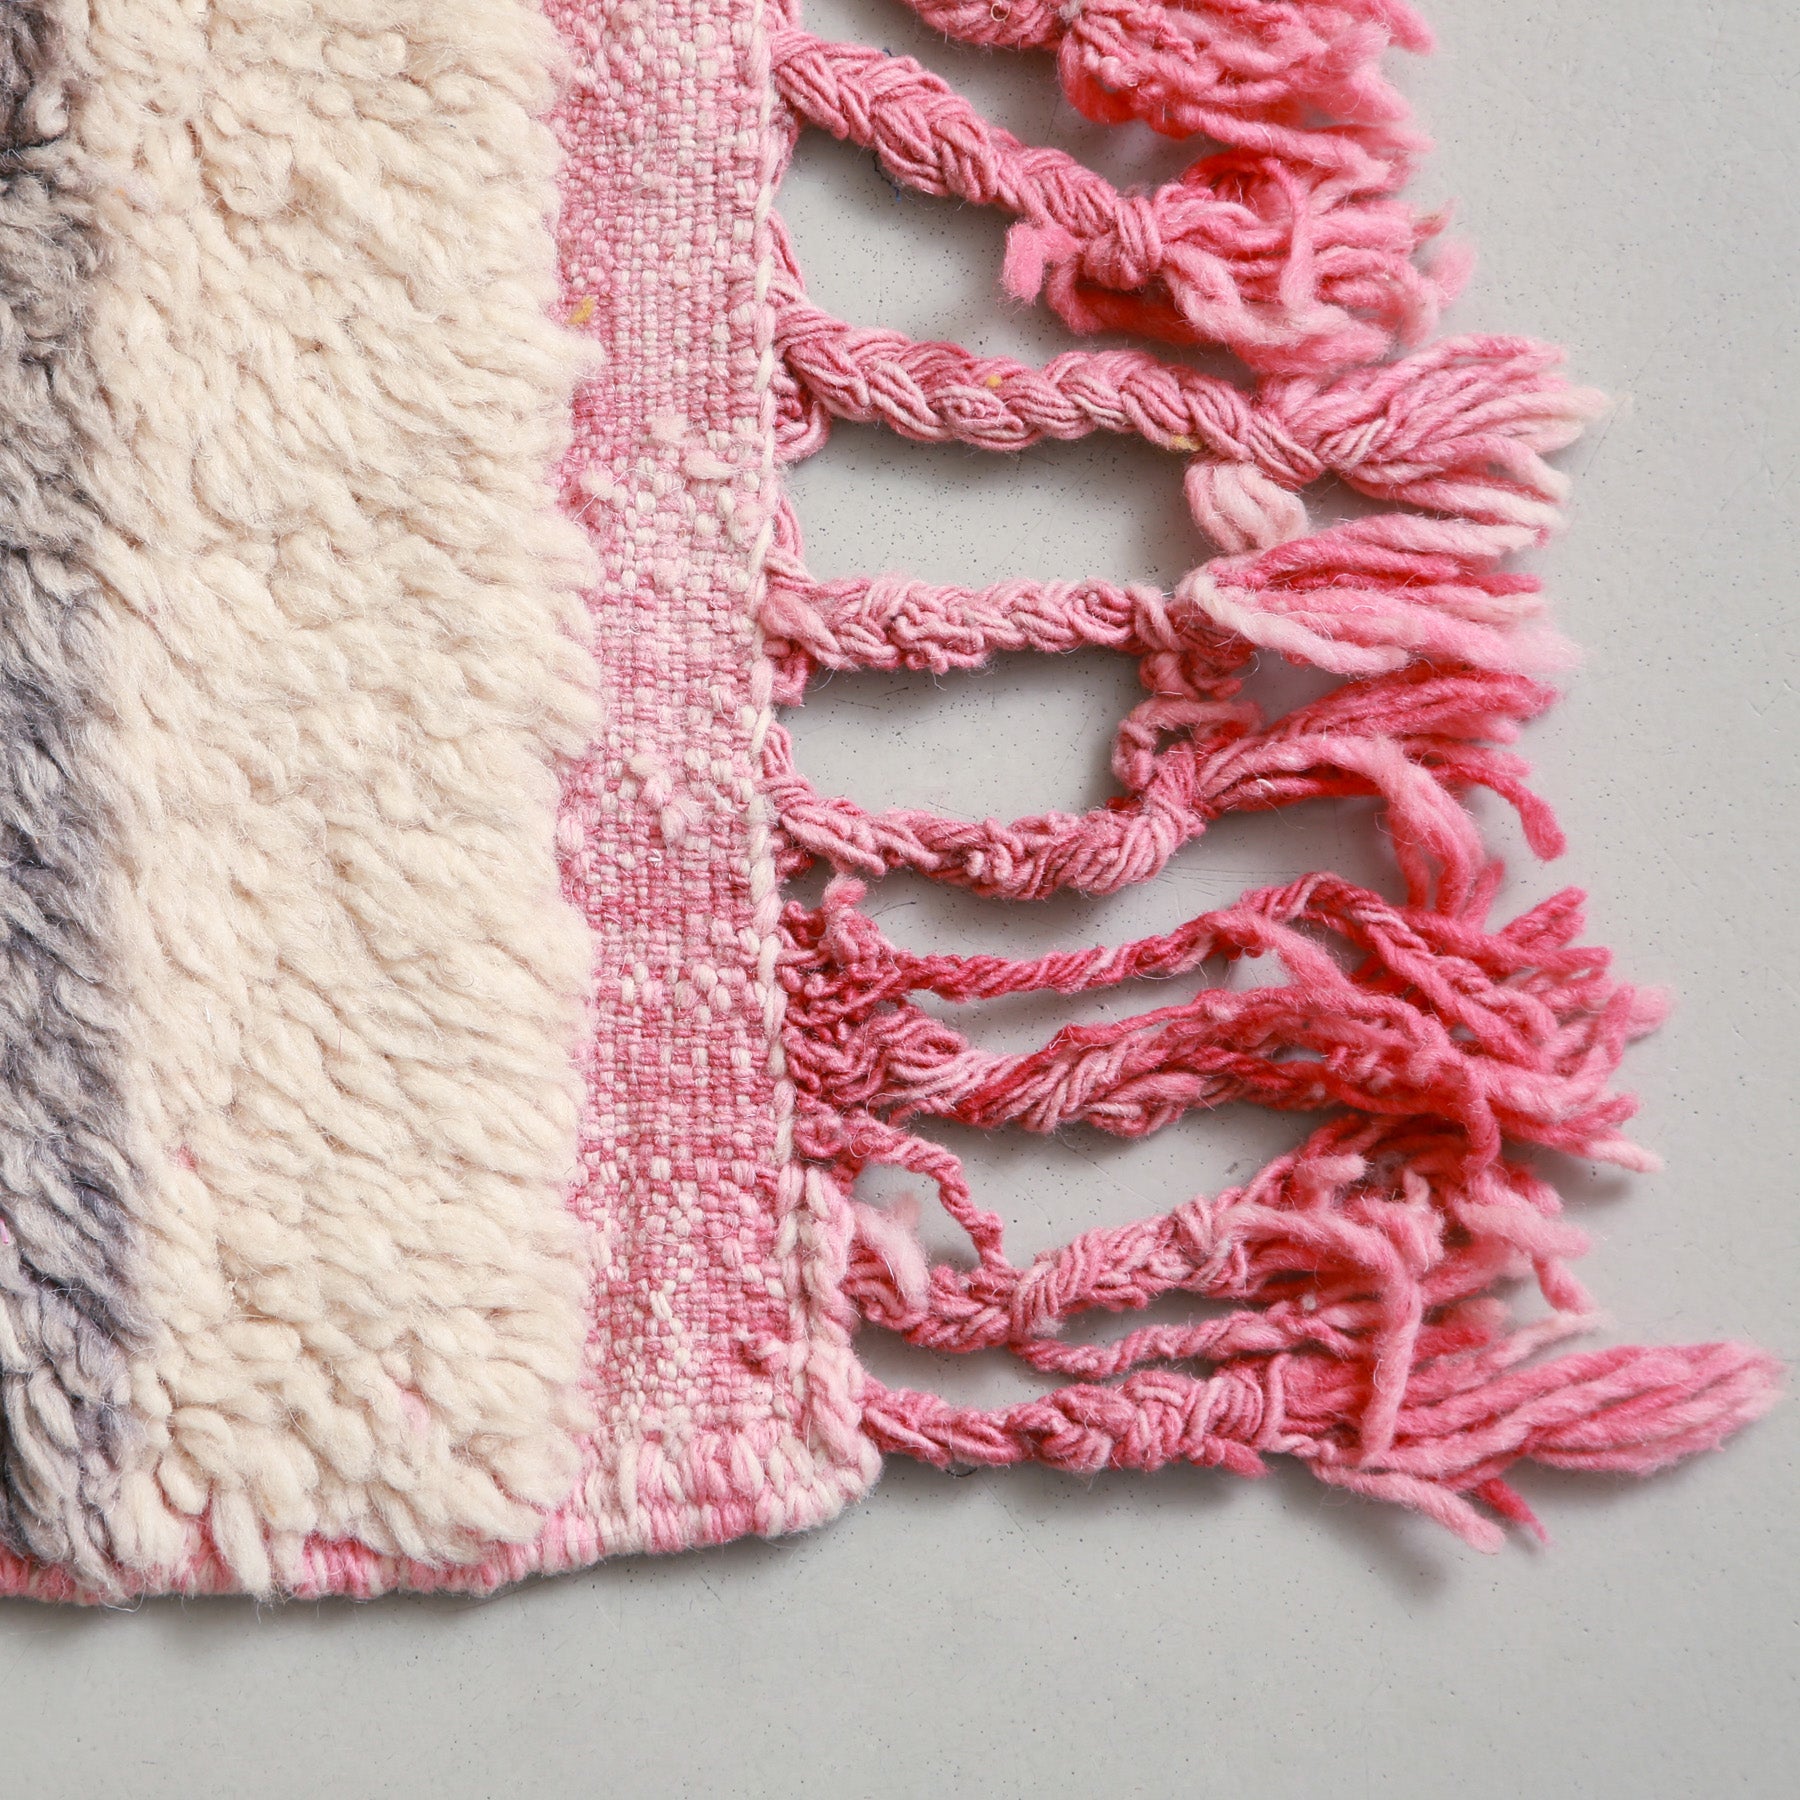 dettaglio della frangia rosa di una passatoia beni ourain in lana bianca